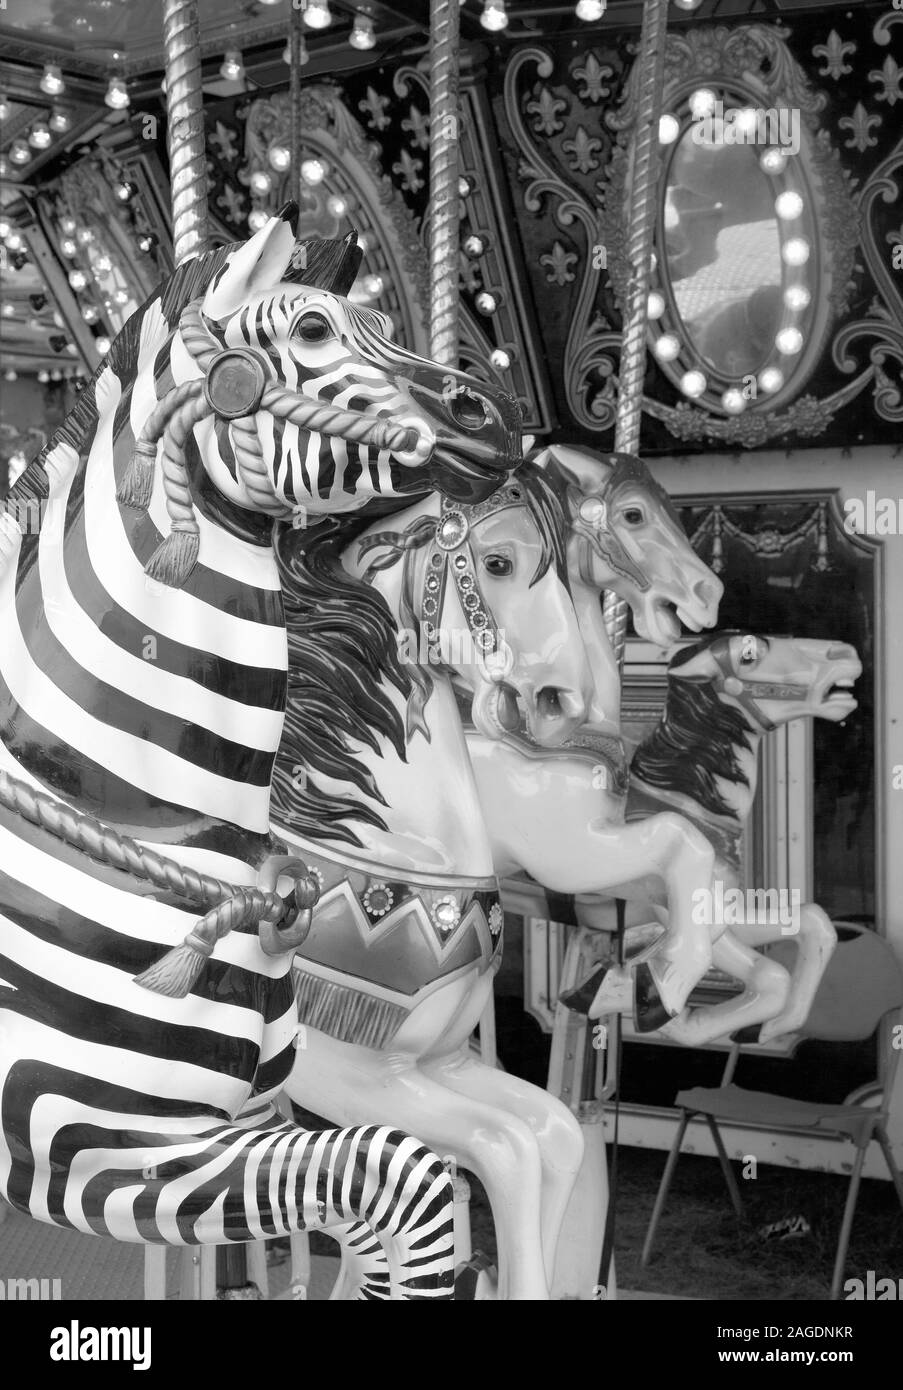 Karussell-Zebras und Pferde auf einem Karussell auf der Messe, 2015 Stockfoto